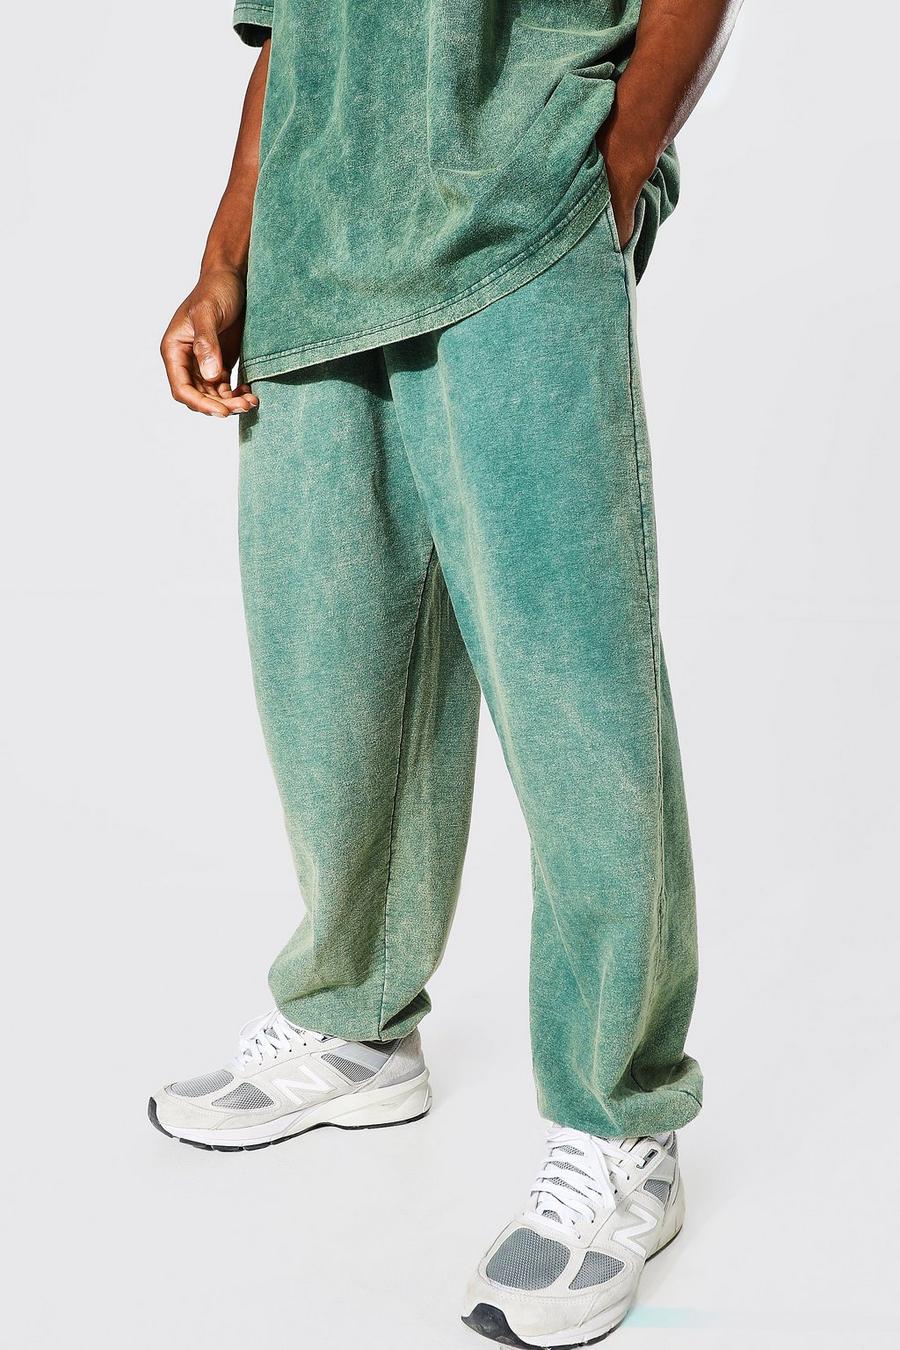 Pantaloni tuta oversize slavati, Green verde image number 1